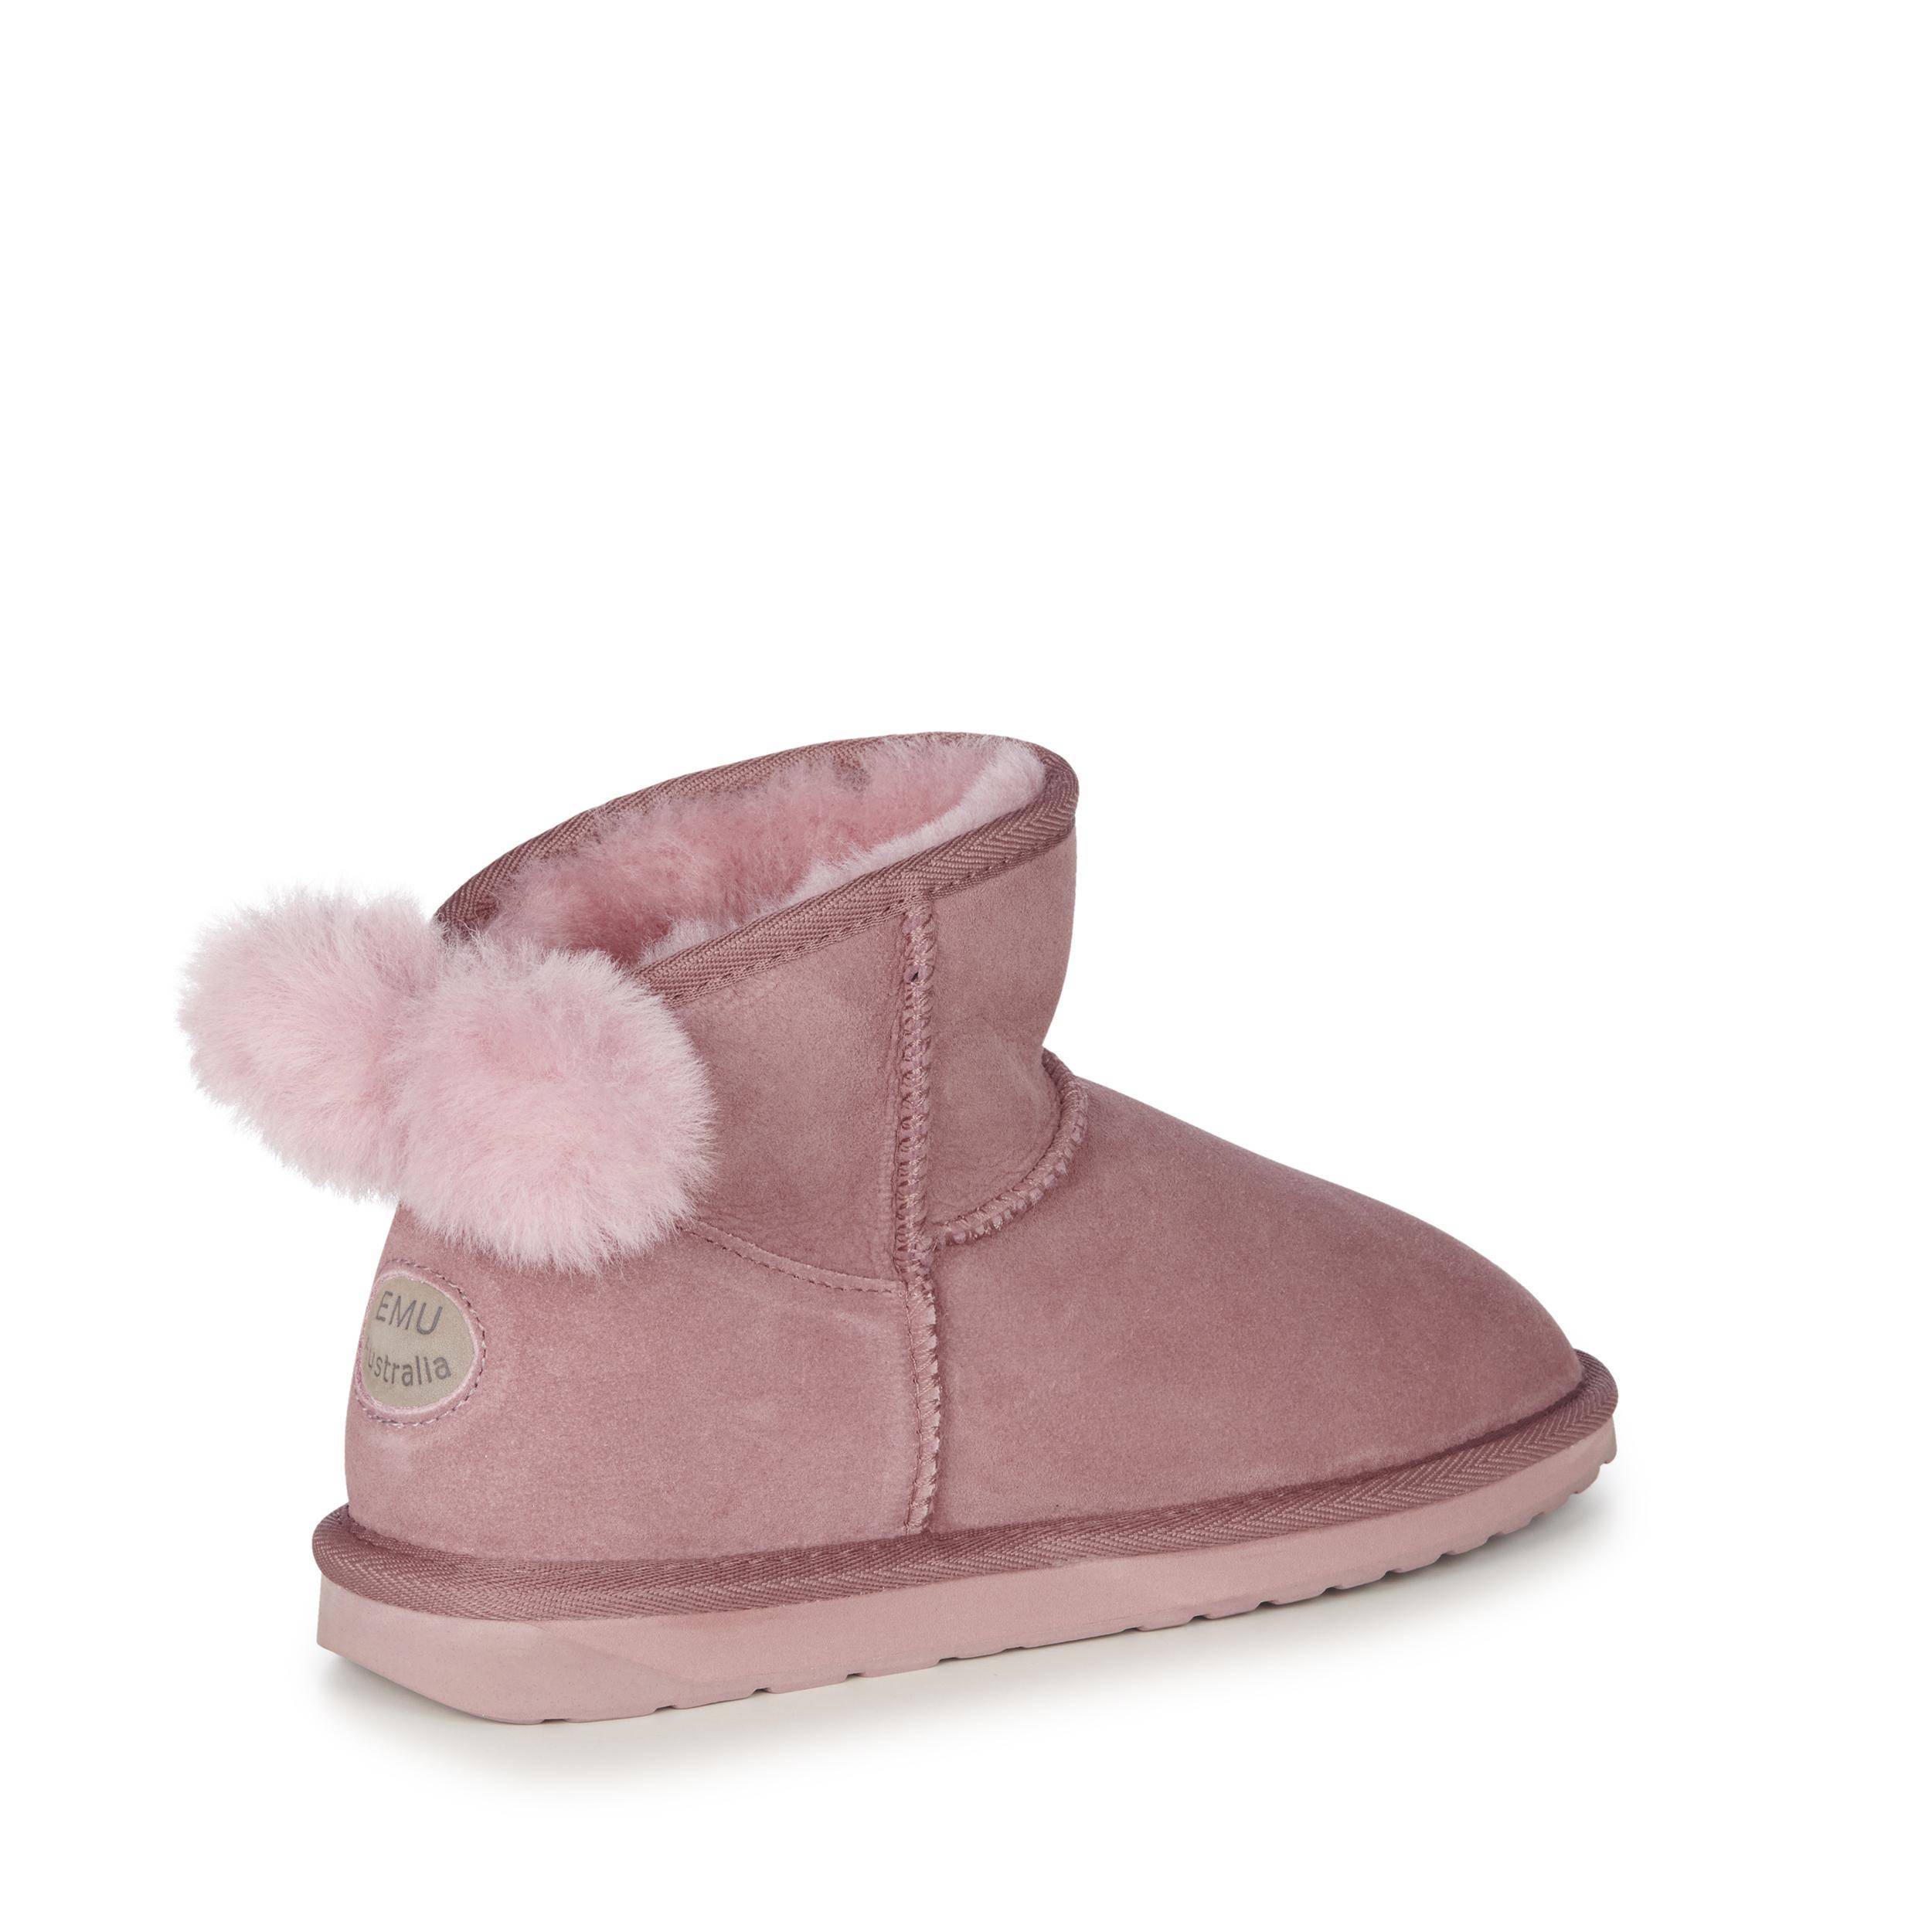 Женские ботинки из овчины (угги) EMU Australia (Rigel W12600), розовые, цвет розовый, размер 39 - фото 4